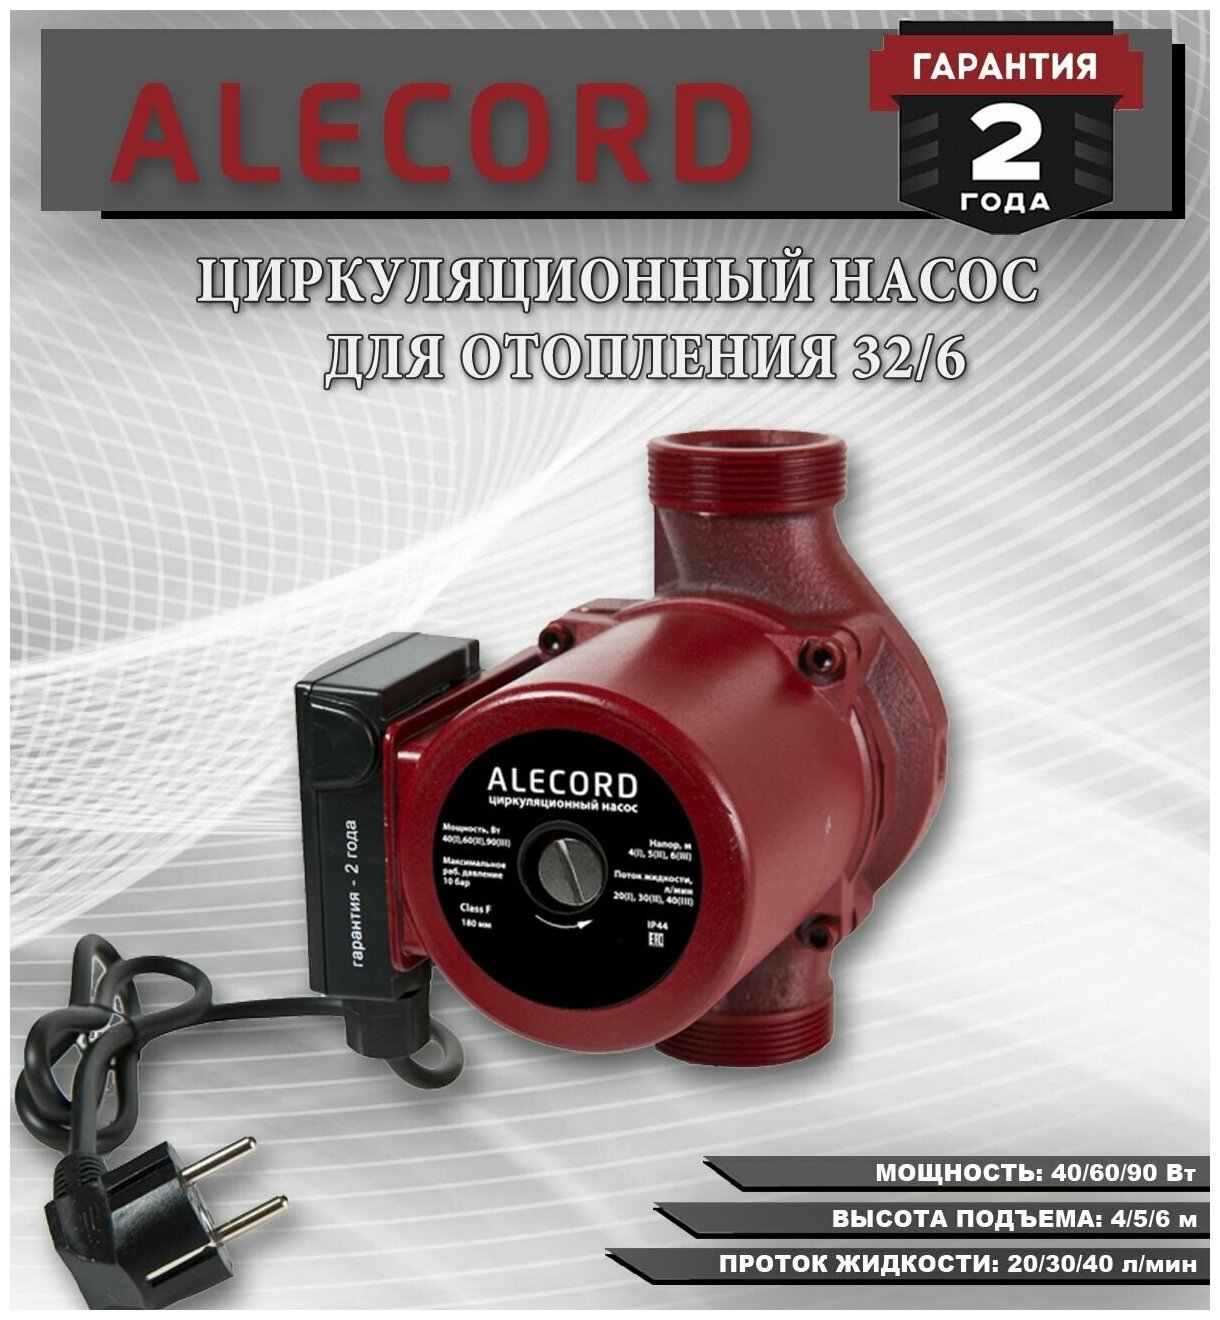 Циркуляционный насос для отопления Alecord 32/6 с кабелем